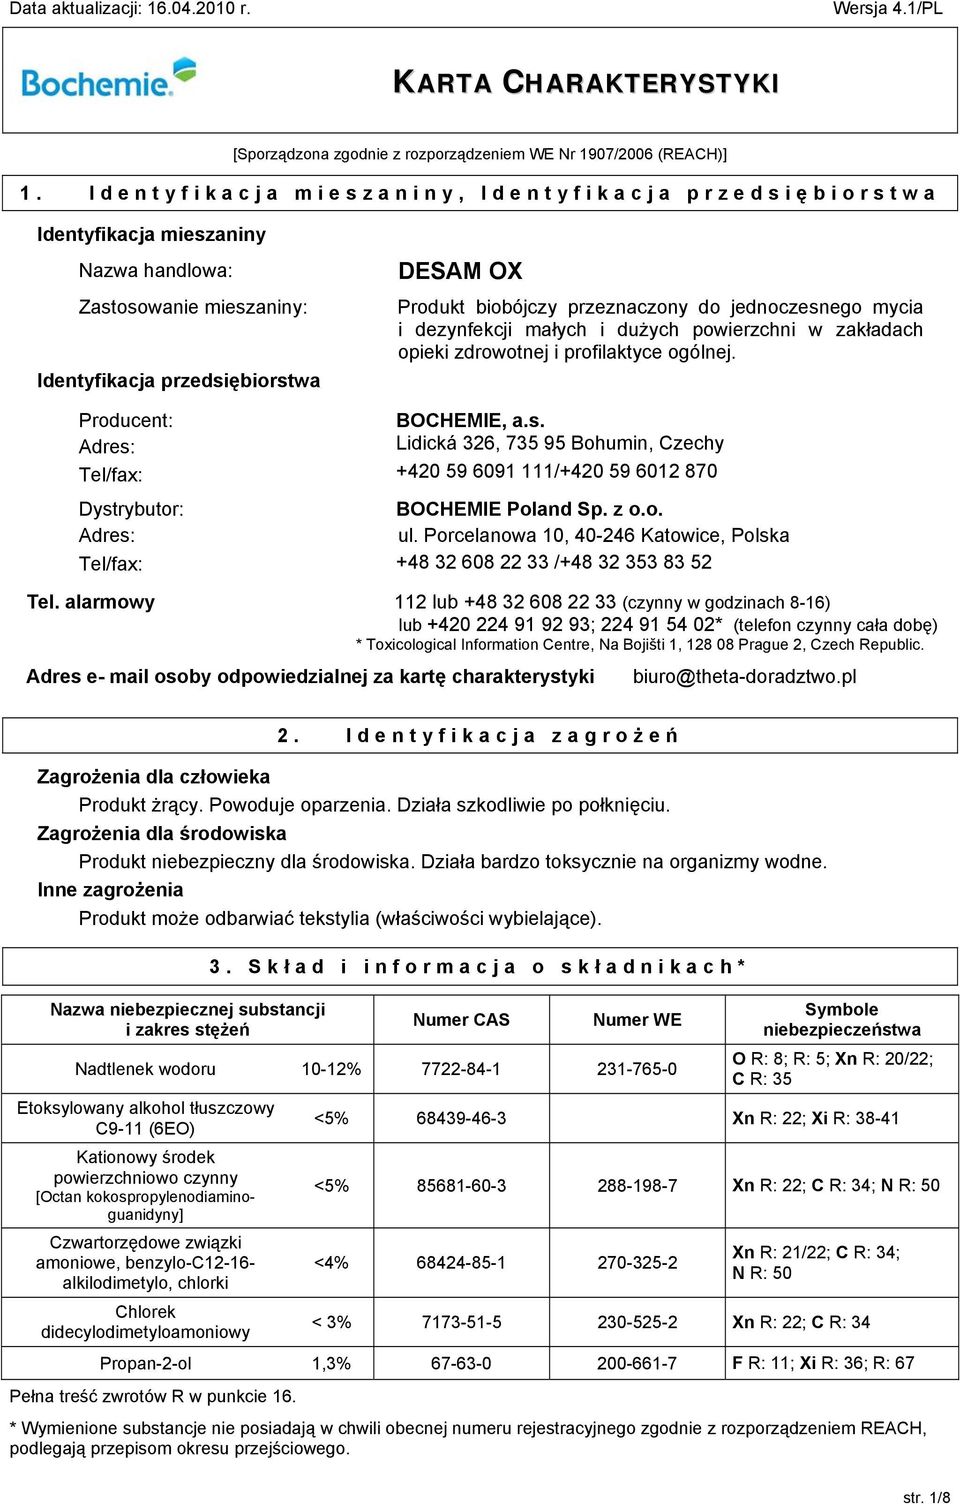 Adres: Tel/fax: DESAM OX Produkt biobójczy przeznaczony do jednoczesnego mycia i dezynfekcji małych i dużych powierzchni w zakładach opieki zdrowotnej i profilaktyce ogólnej. BOCHEMIE, a.s. Lidická 326, +420 59 6091 111/+420 59 6012 870 BOCHEMIE Poland Sp.